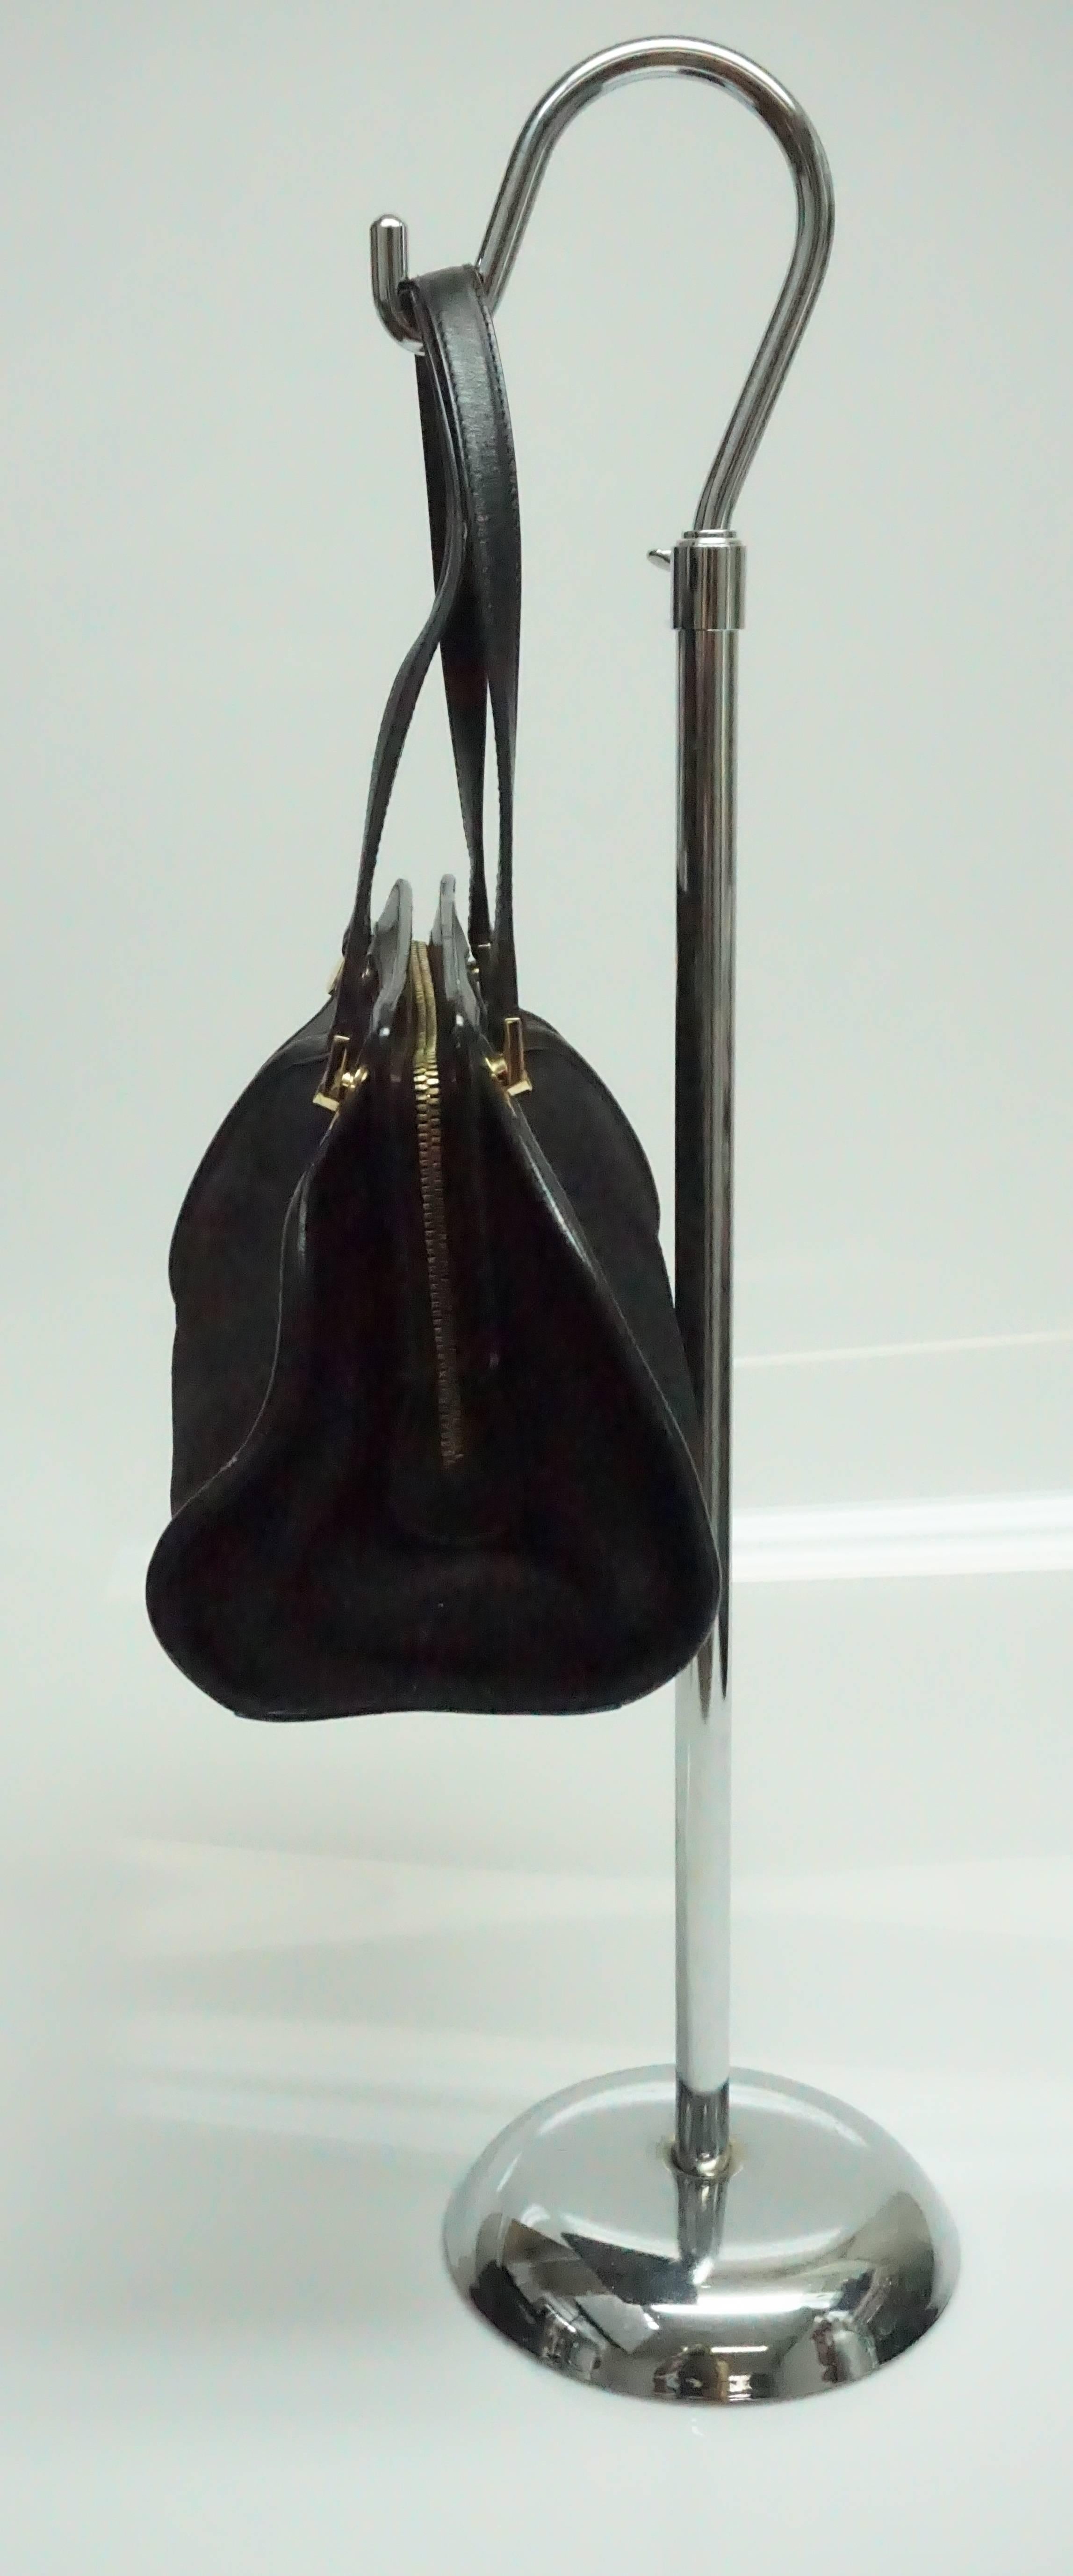 Salvatore Ferragamo Black Suede and Leather Top Handle Handbag at ...